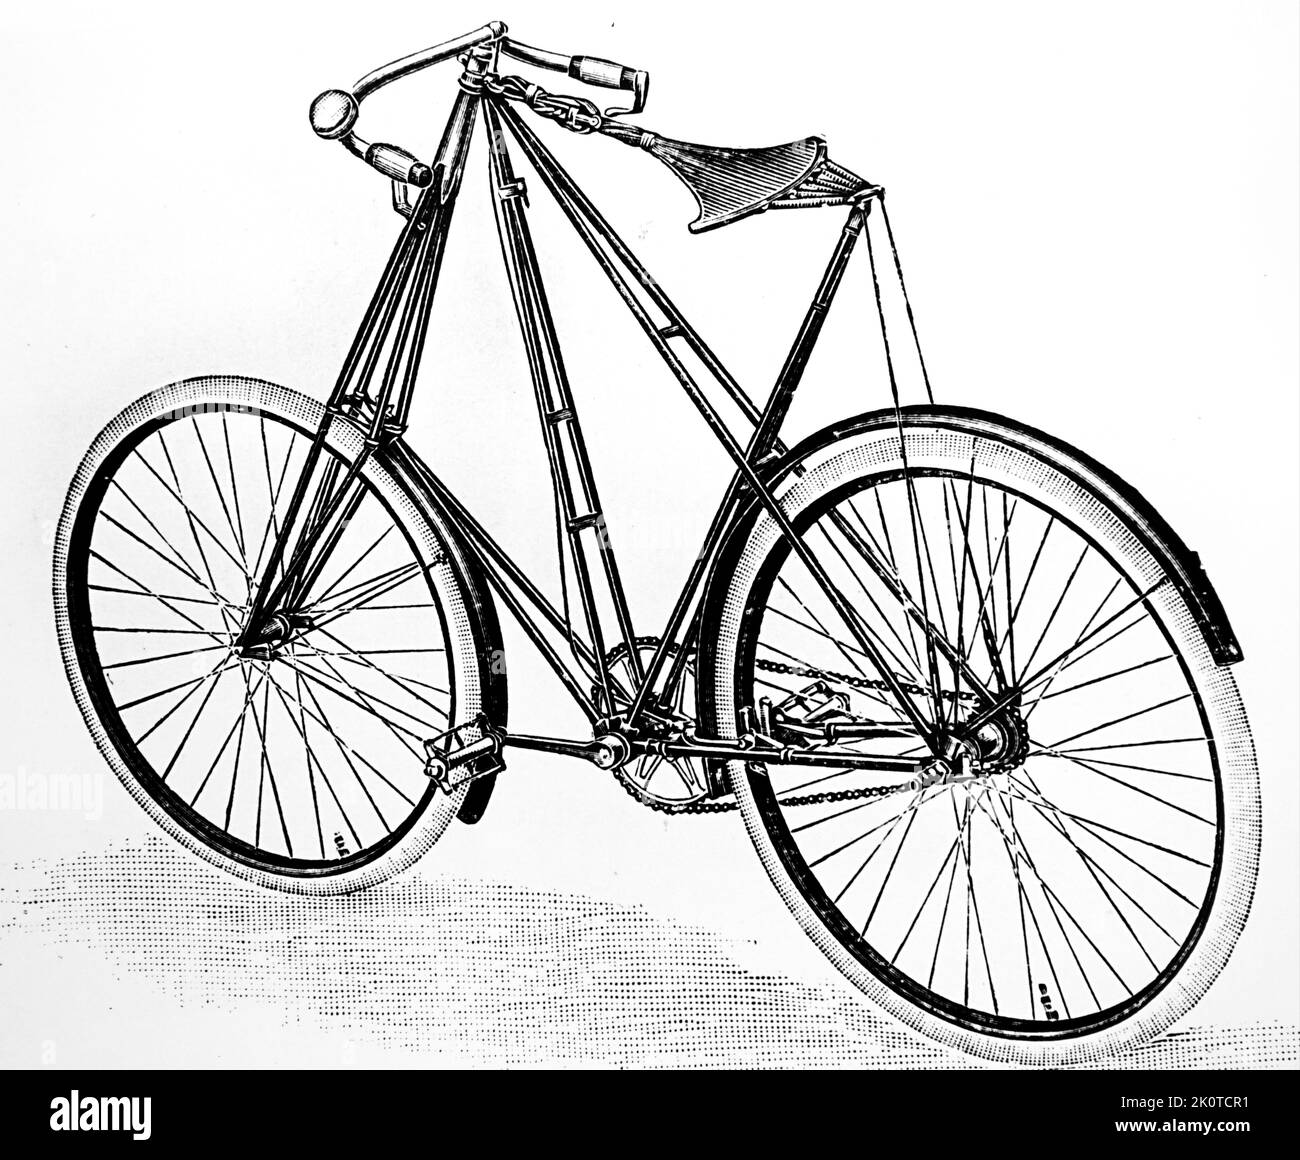 La bicicletta Pedersen, detta anche bicicletta Dursley Pedersen, sviluppata dall'inventore danese Mikael Pedersen e prodotta nella città inglese di Dursley 1904 Foto Stock